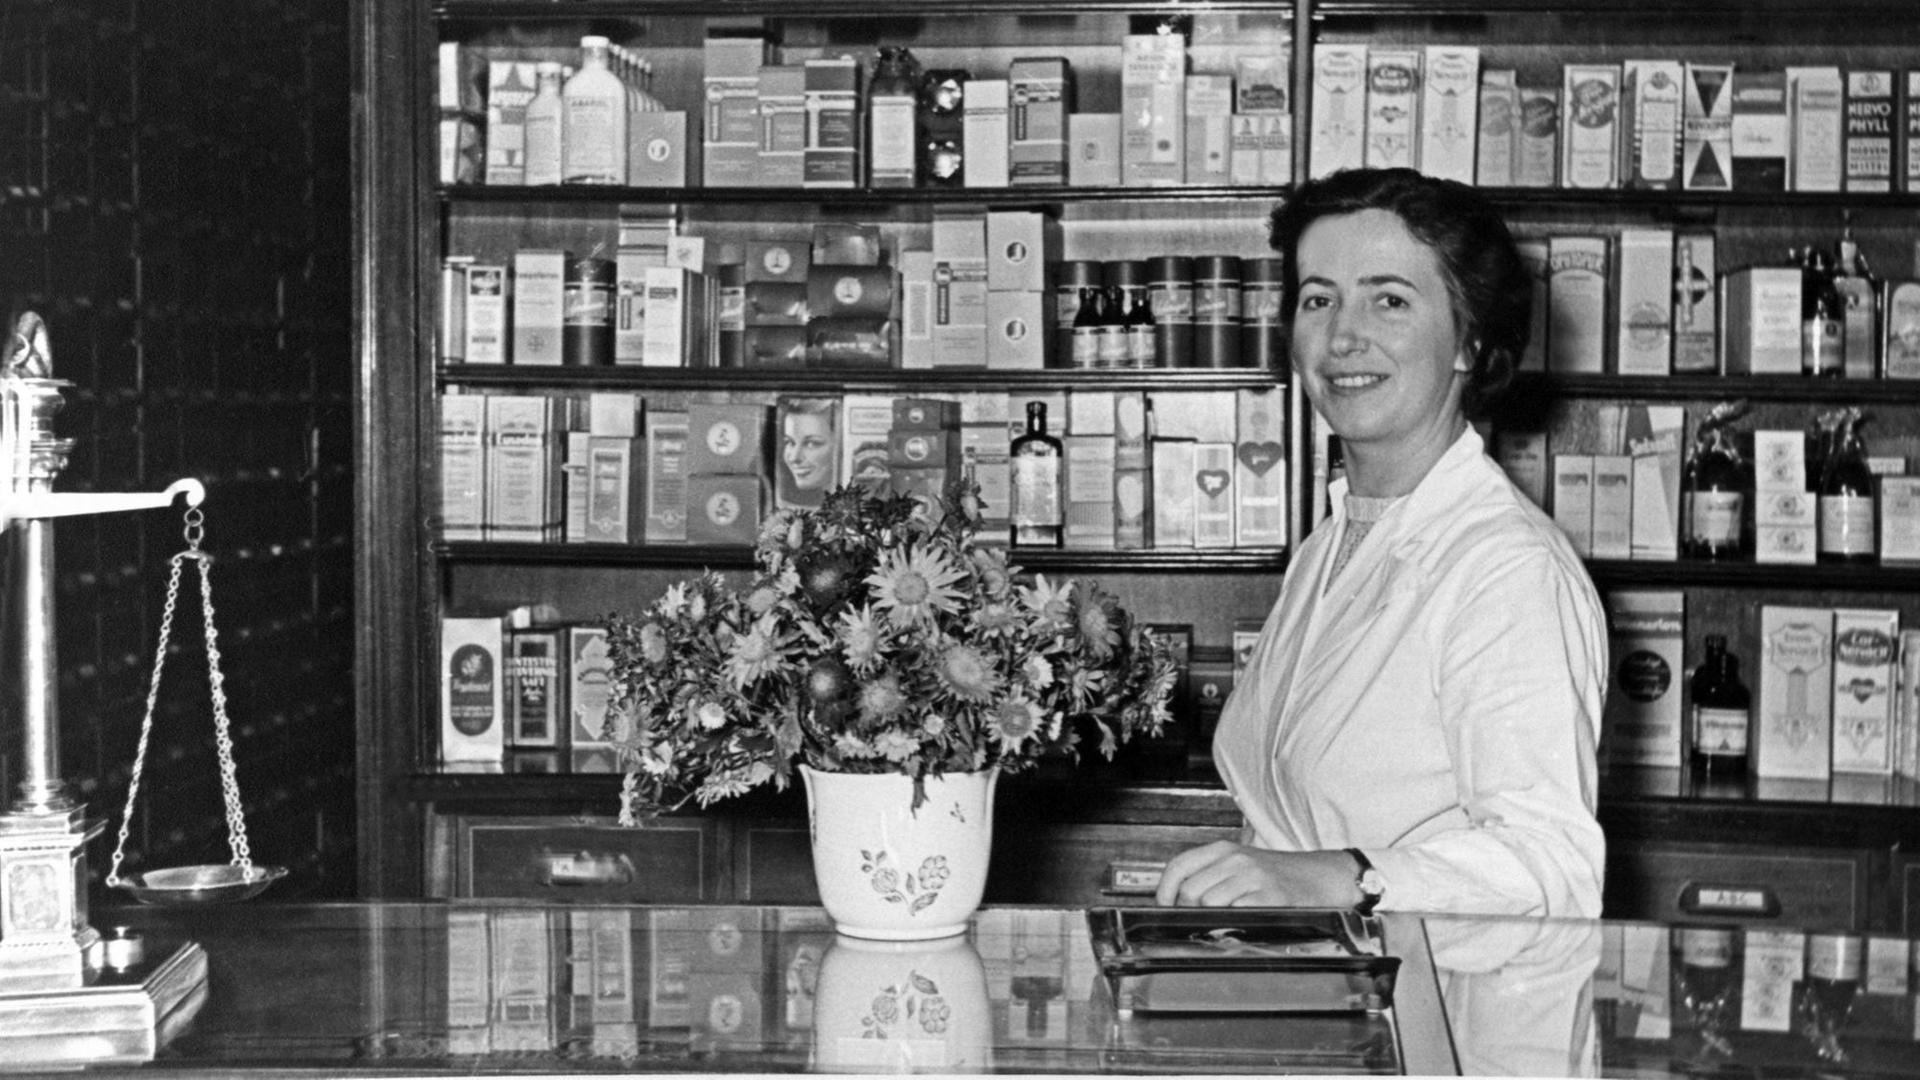 Eine historische schwarz-weiß-Aufnahme einer typischen deutschen Apotheke aus den 50er Jahren zeigt eine Apothekeri in weißem Kittel hinter einem Tresen auf dem ein Blumenstrauß und eine Waage im Anschnitt zu sehen sind.